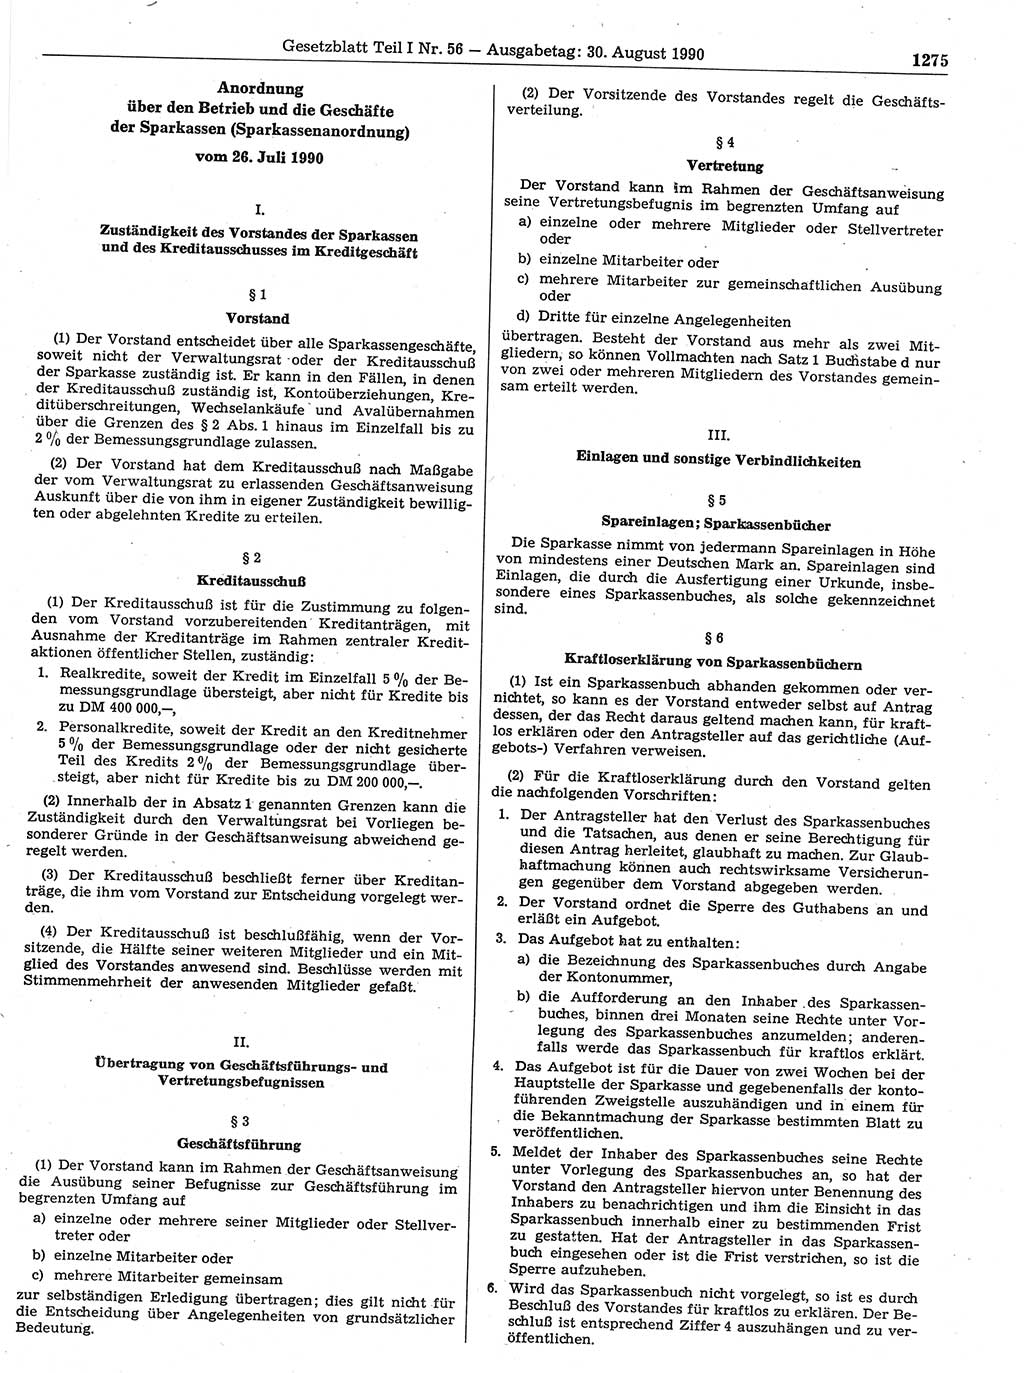 Gesetzblatt (GBl.) der Deutschen Demokratischen Republik (DDR) Teil Ⅰ 1990, Seite 1275 (GBl. DDR Ⅰ 1990, S. 1275)